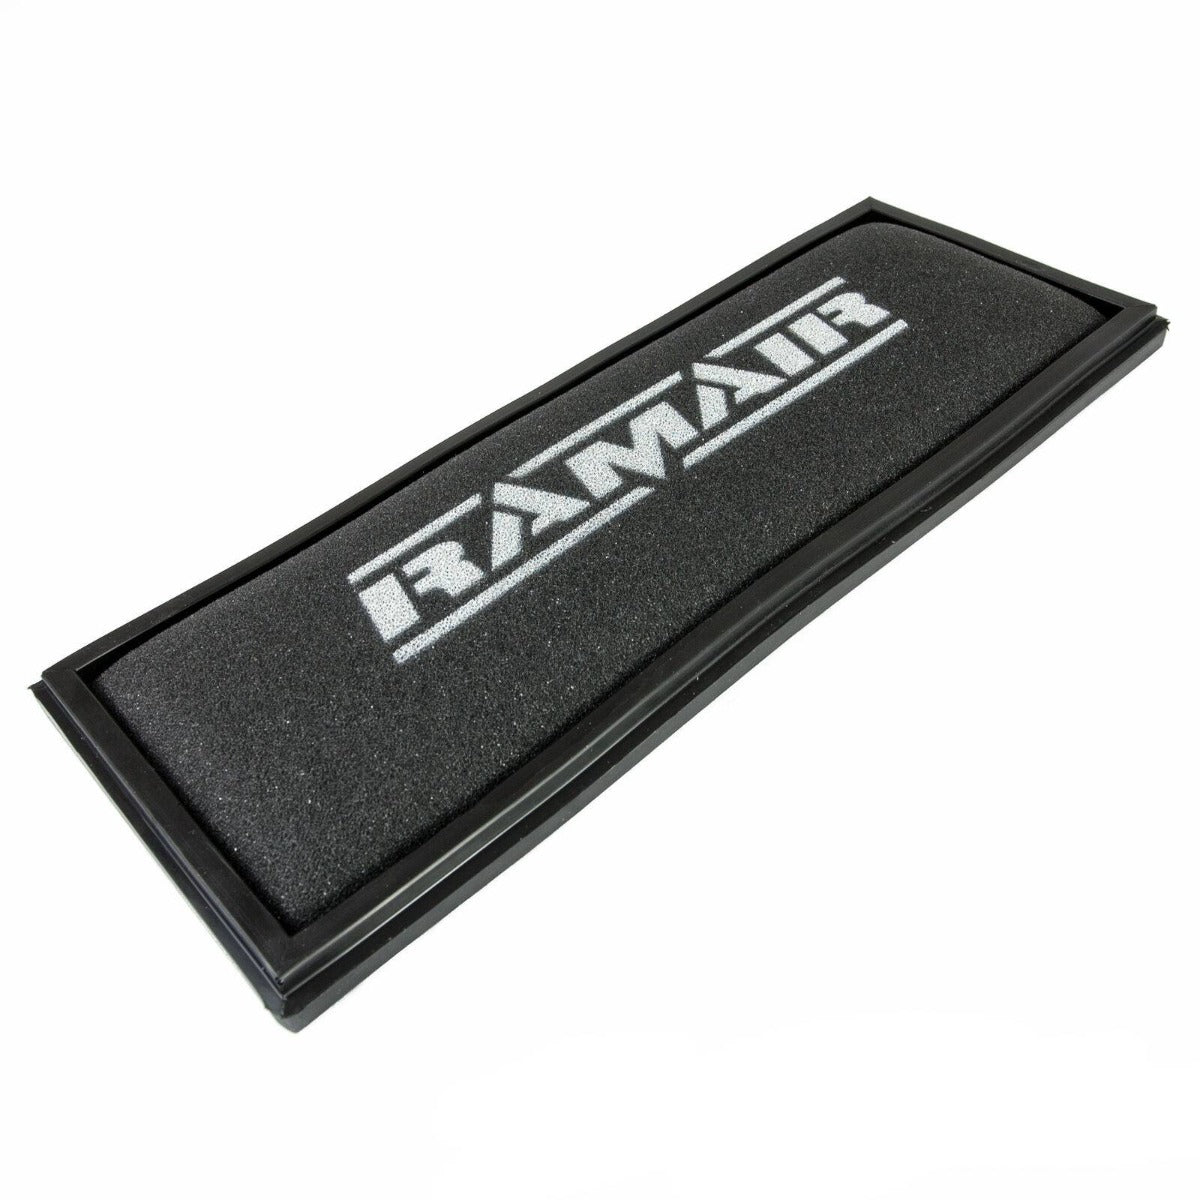 RAMAIR Air Panel Filter for Mercedes-Benz GL450 GL500 X164 (03/06-)